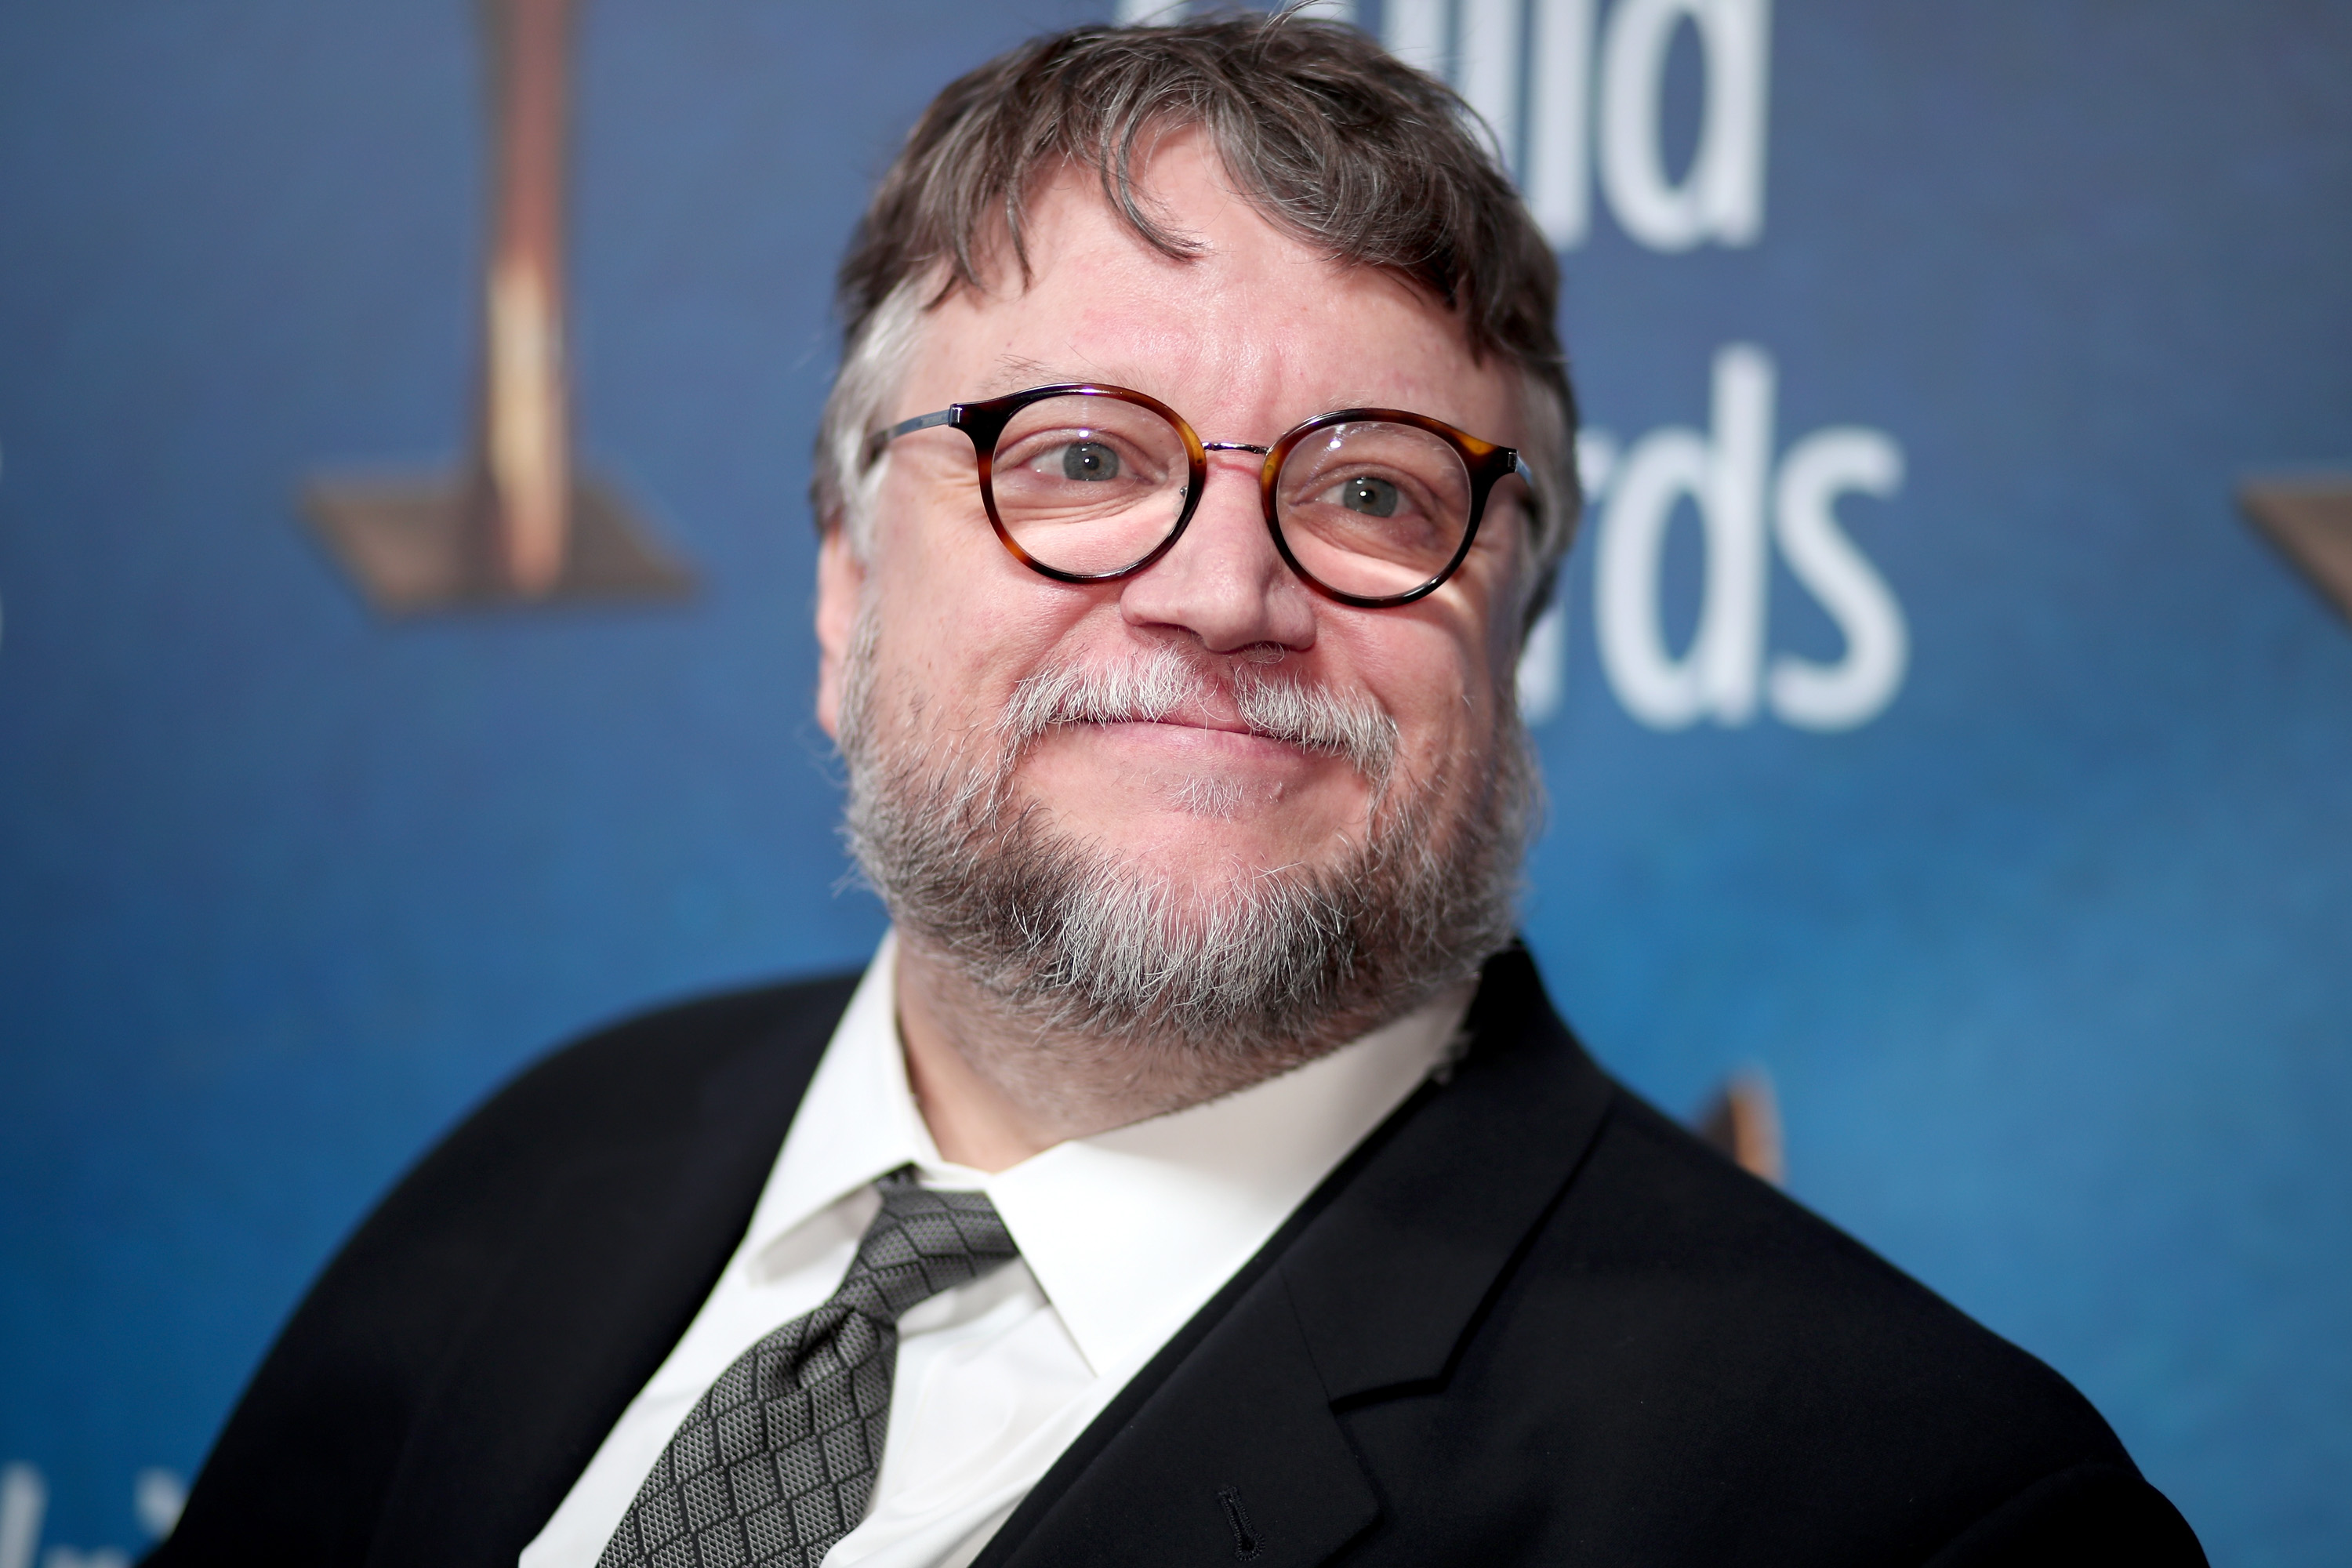 Watch Guillermo del Toro's Cabinet of Curiosities